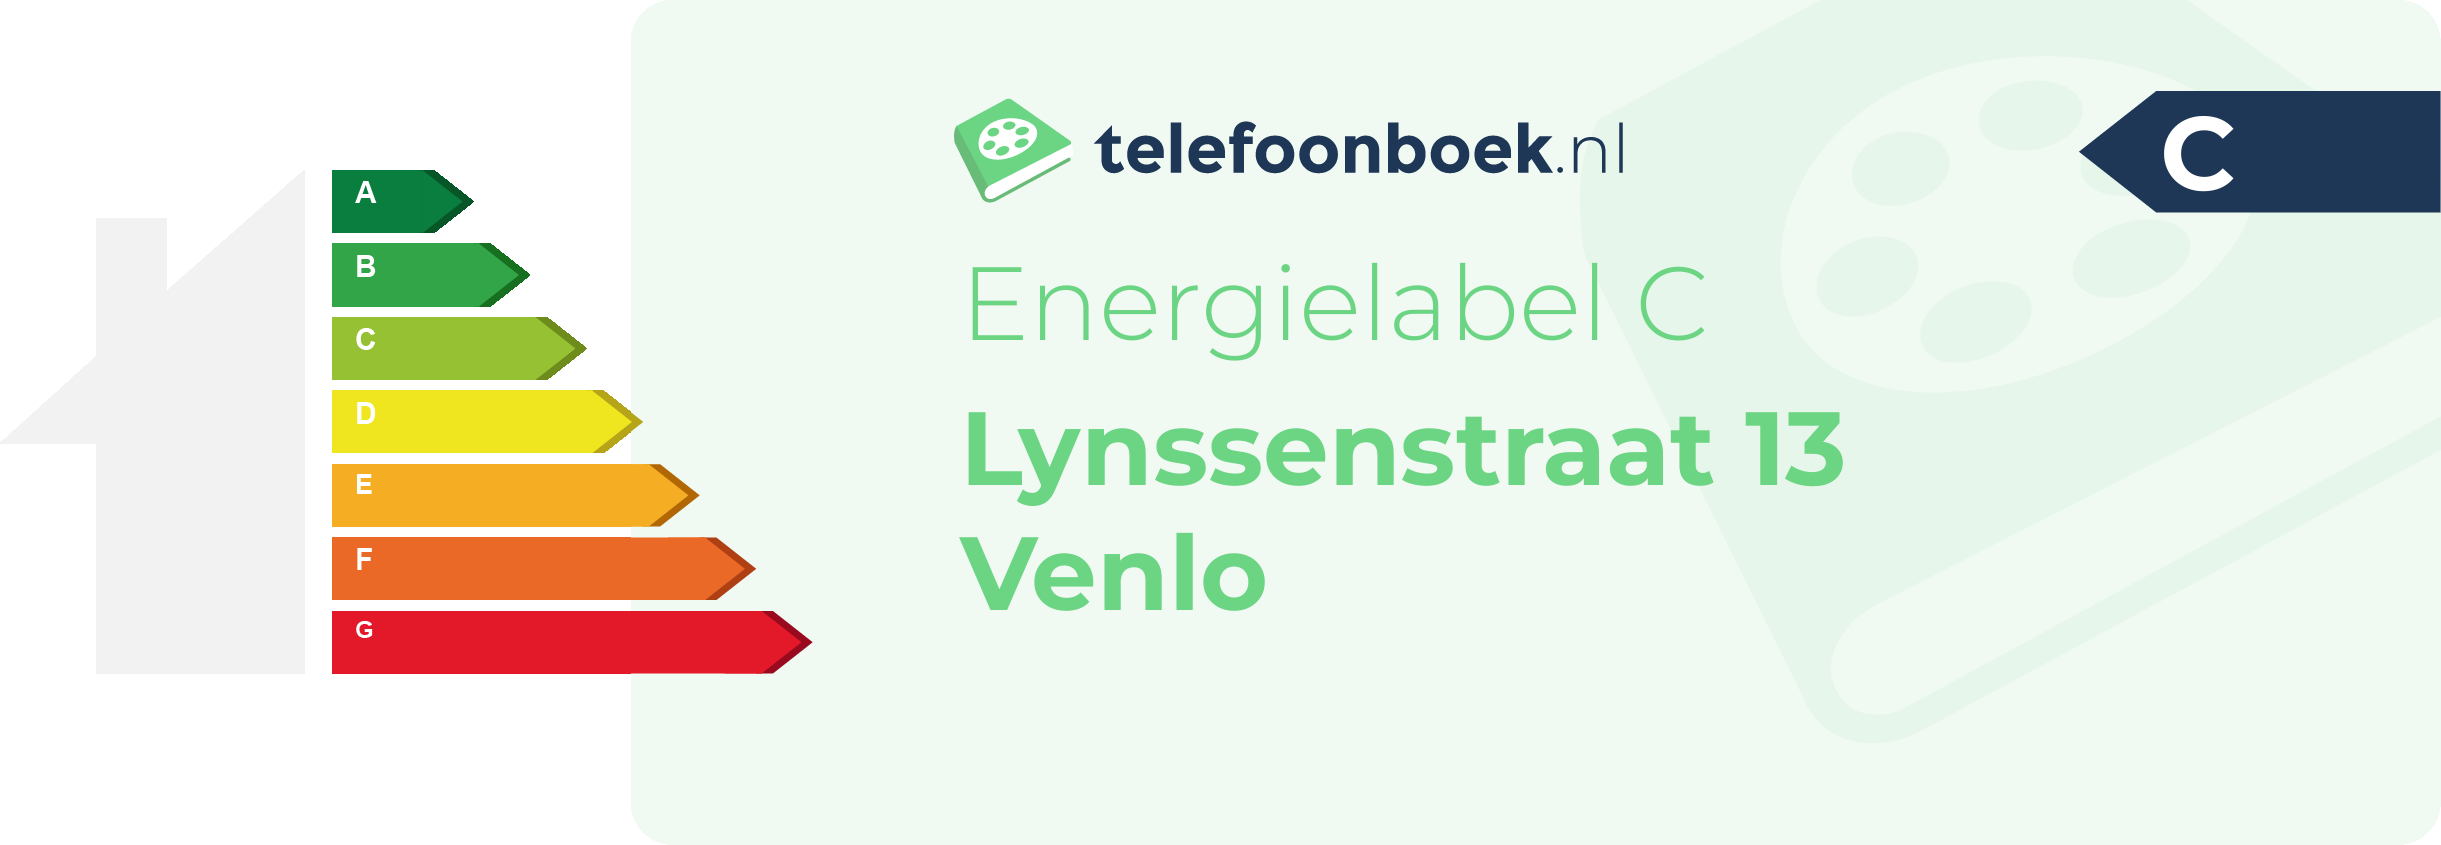 Energielabel Lynssenstraat 13 Venlo